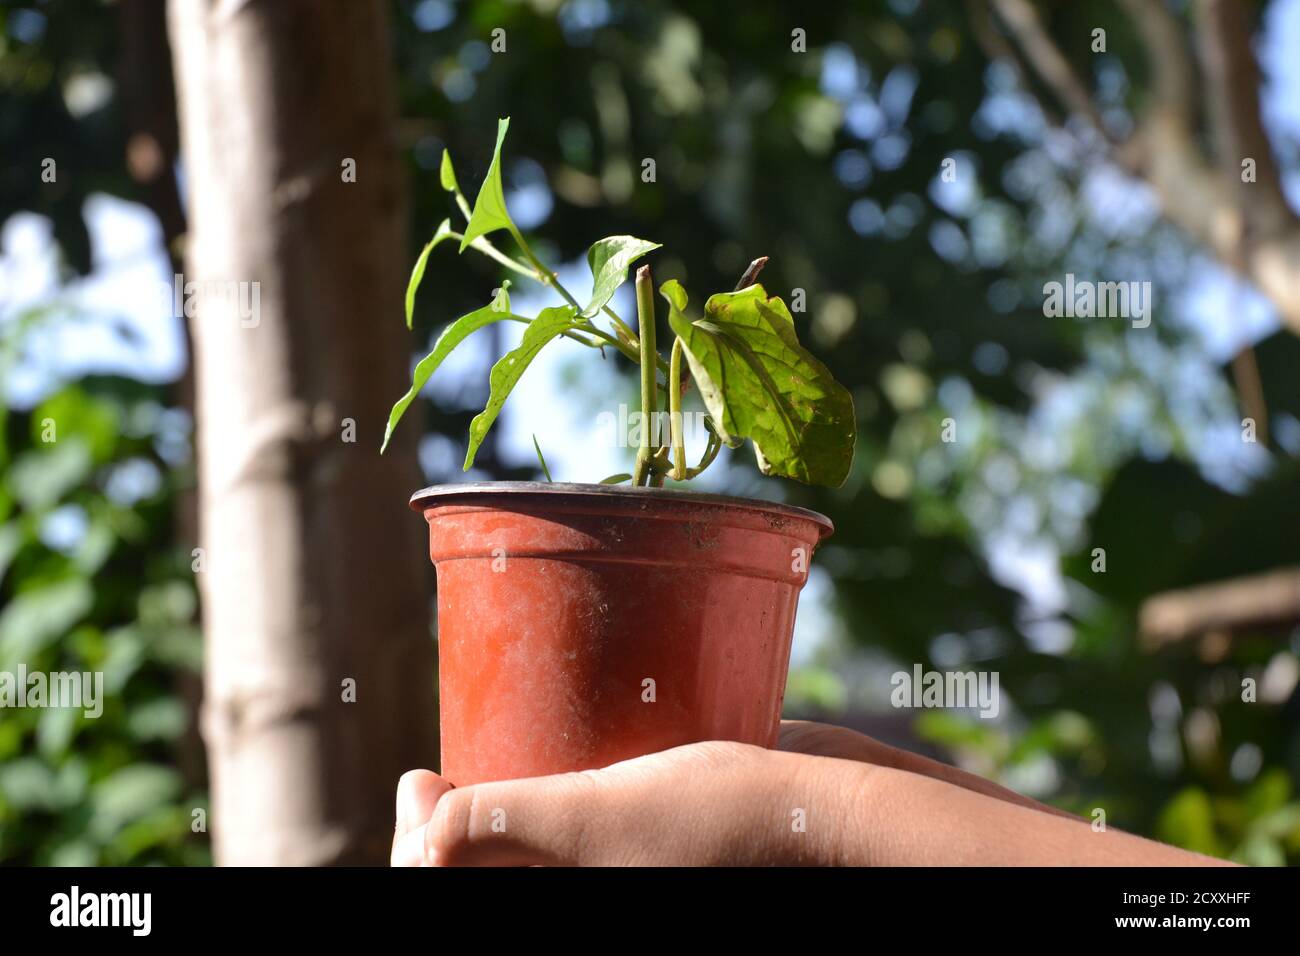 Eine grüne Betelpflanze mit hellen Blättern sieht schön aus. Betelblätter werden als Mundfrischer und pflanzliche Zwecke in südasiatischen Ländern verwendet. Stockfoto